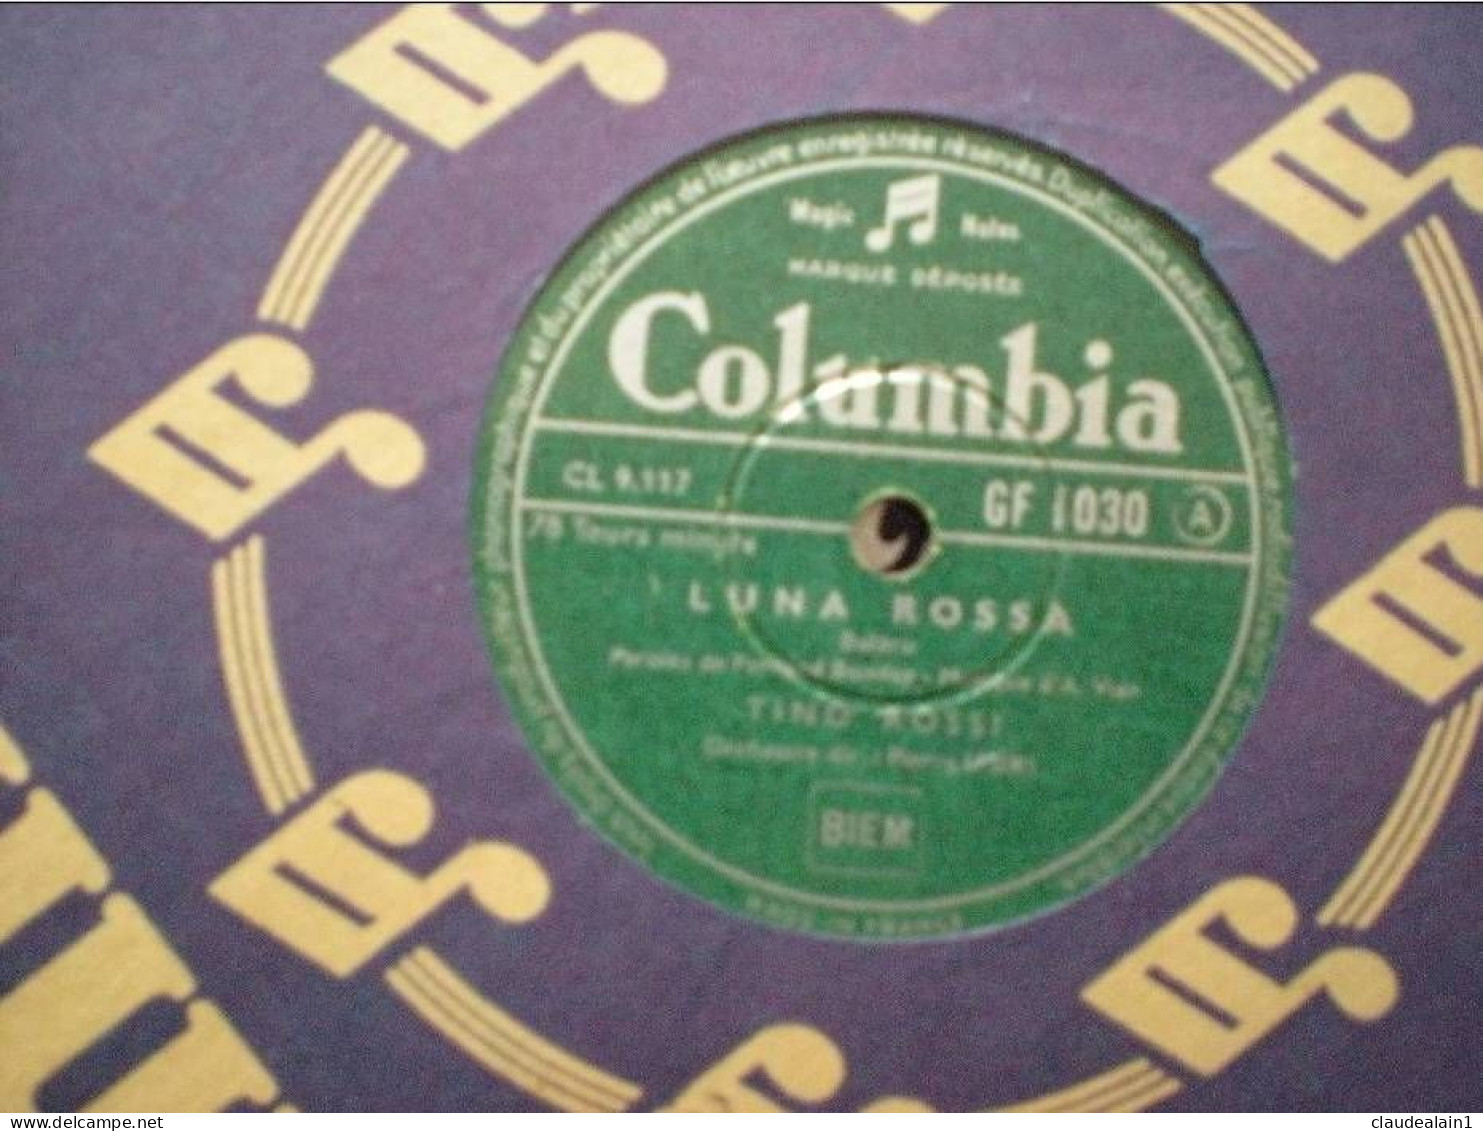 DISQUE COLUMBIA VINYLE 78T - TINO ROSSI - LUNA ROSSA - SI JAMAIS - 78 Rpm - Gramophone Records